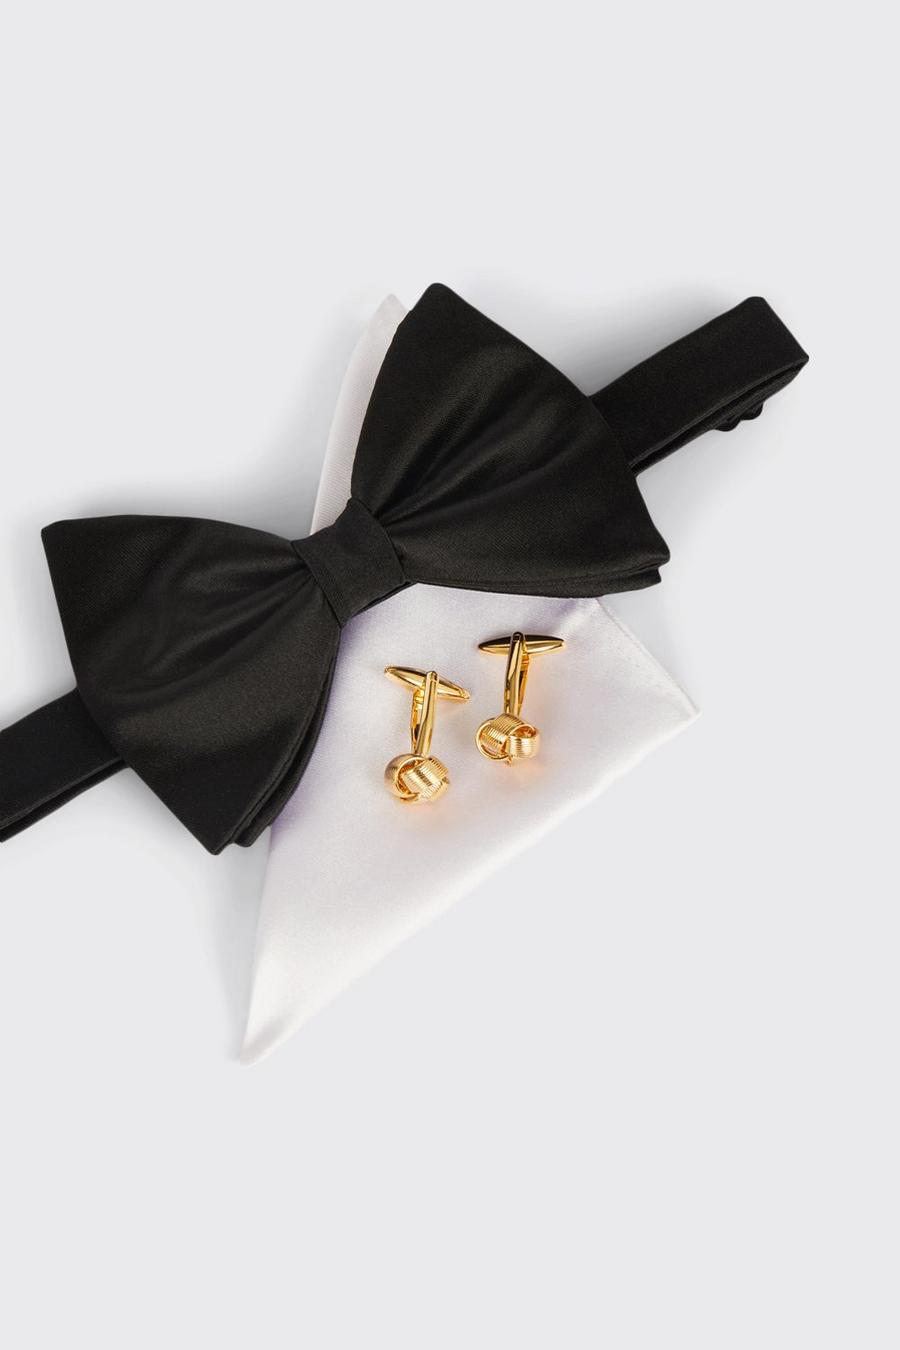 Black Silk Bow Tie, Handkerchief & Cufflinks